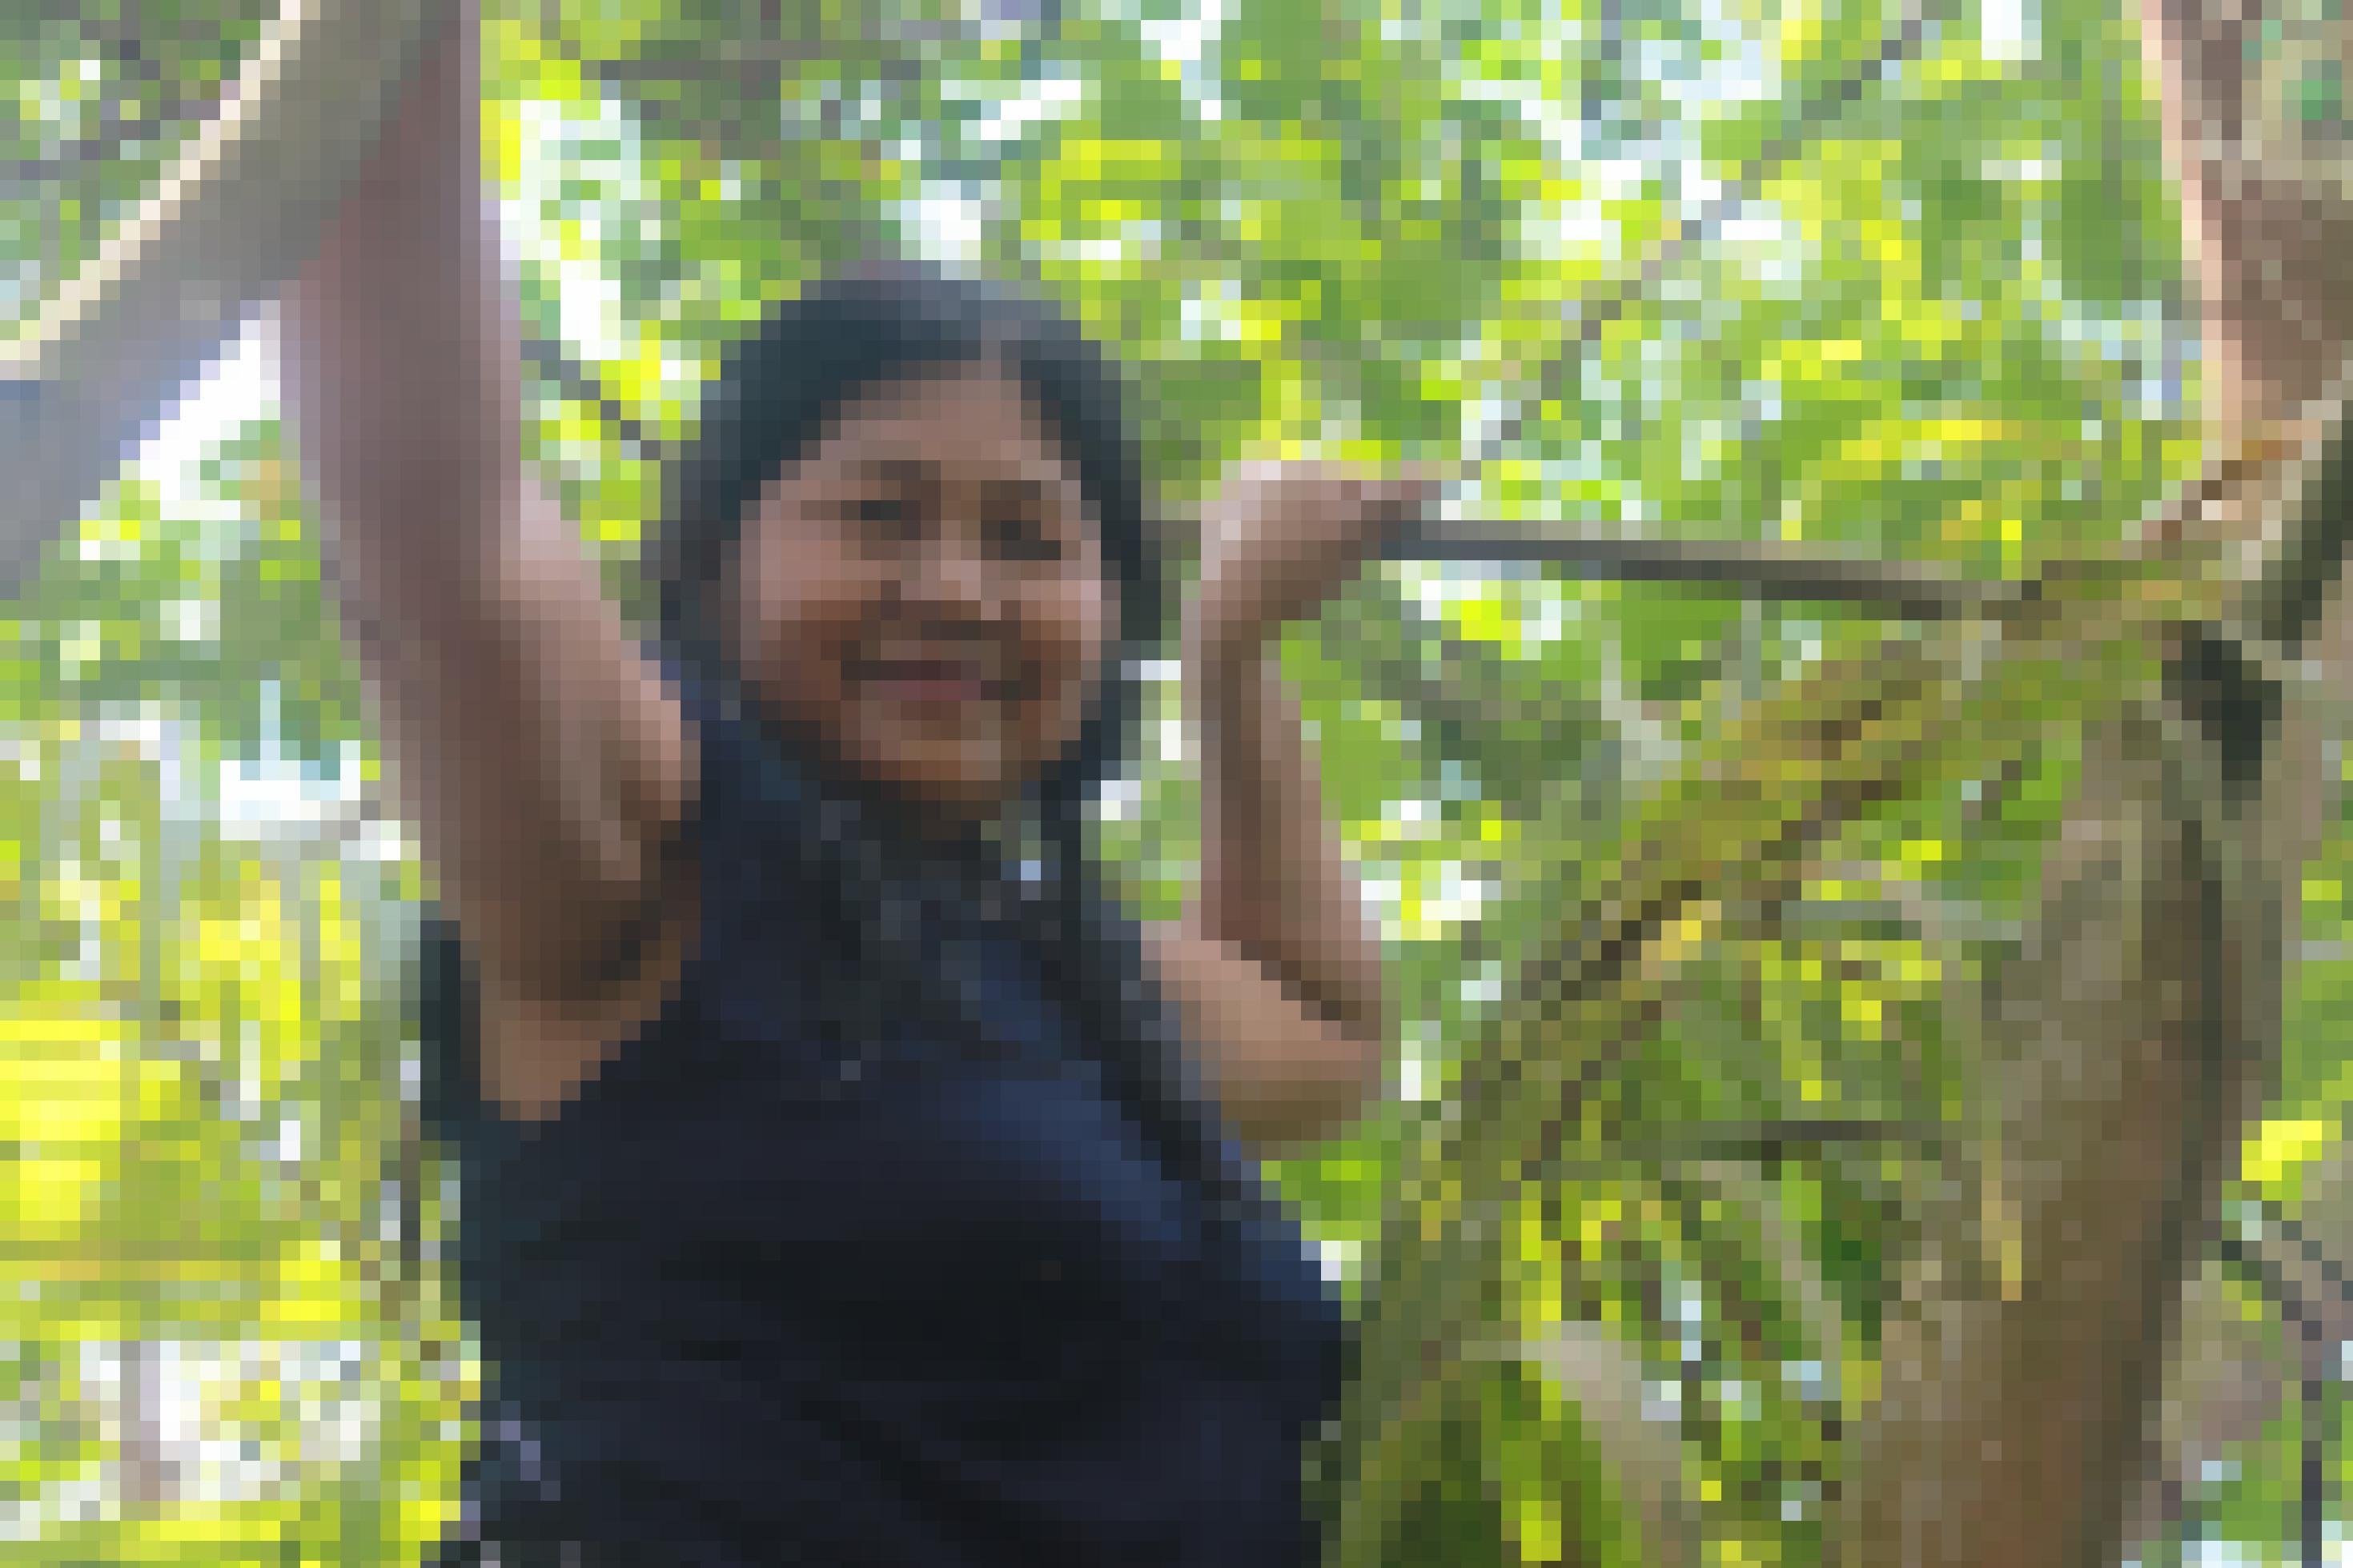 Frau mit brauner Haut, mittelalt, schwarze Haare bis auf die Schultern, ärmelloses blaues T-Shirt, blickt von einem Baum herunter in die Kamera.